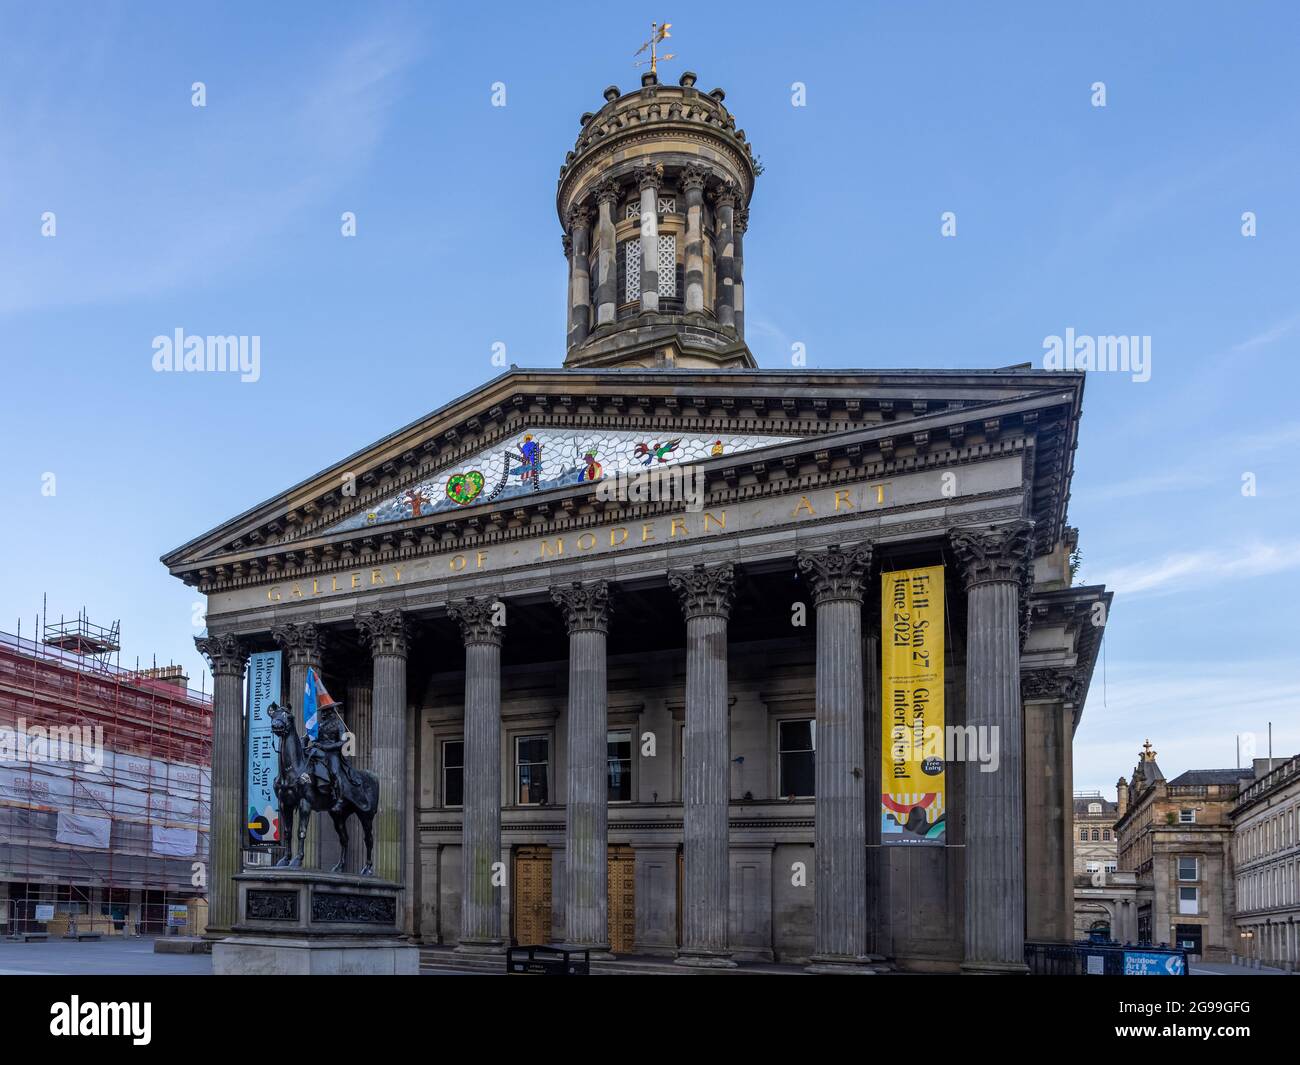 La statue du duc de Wellington devant l'édifice de la Galerie d'art moderne, sur la place Royal Exchange, dans le centre-ville de Glasgow, en Écosse. Banque D'Images